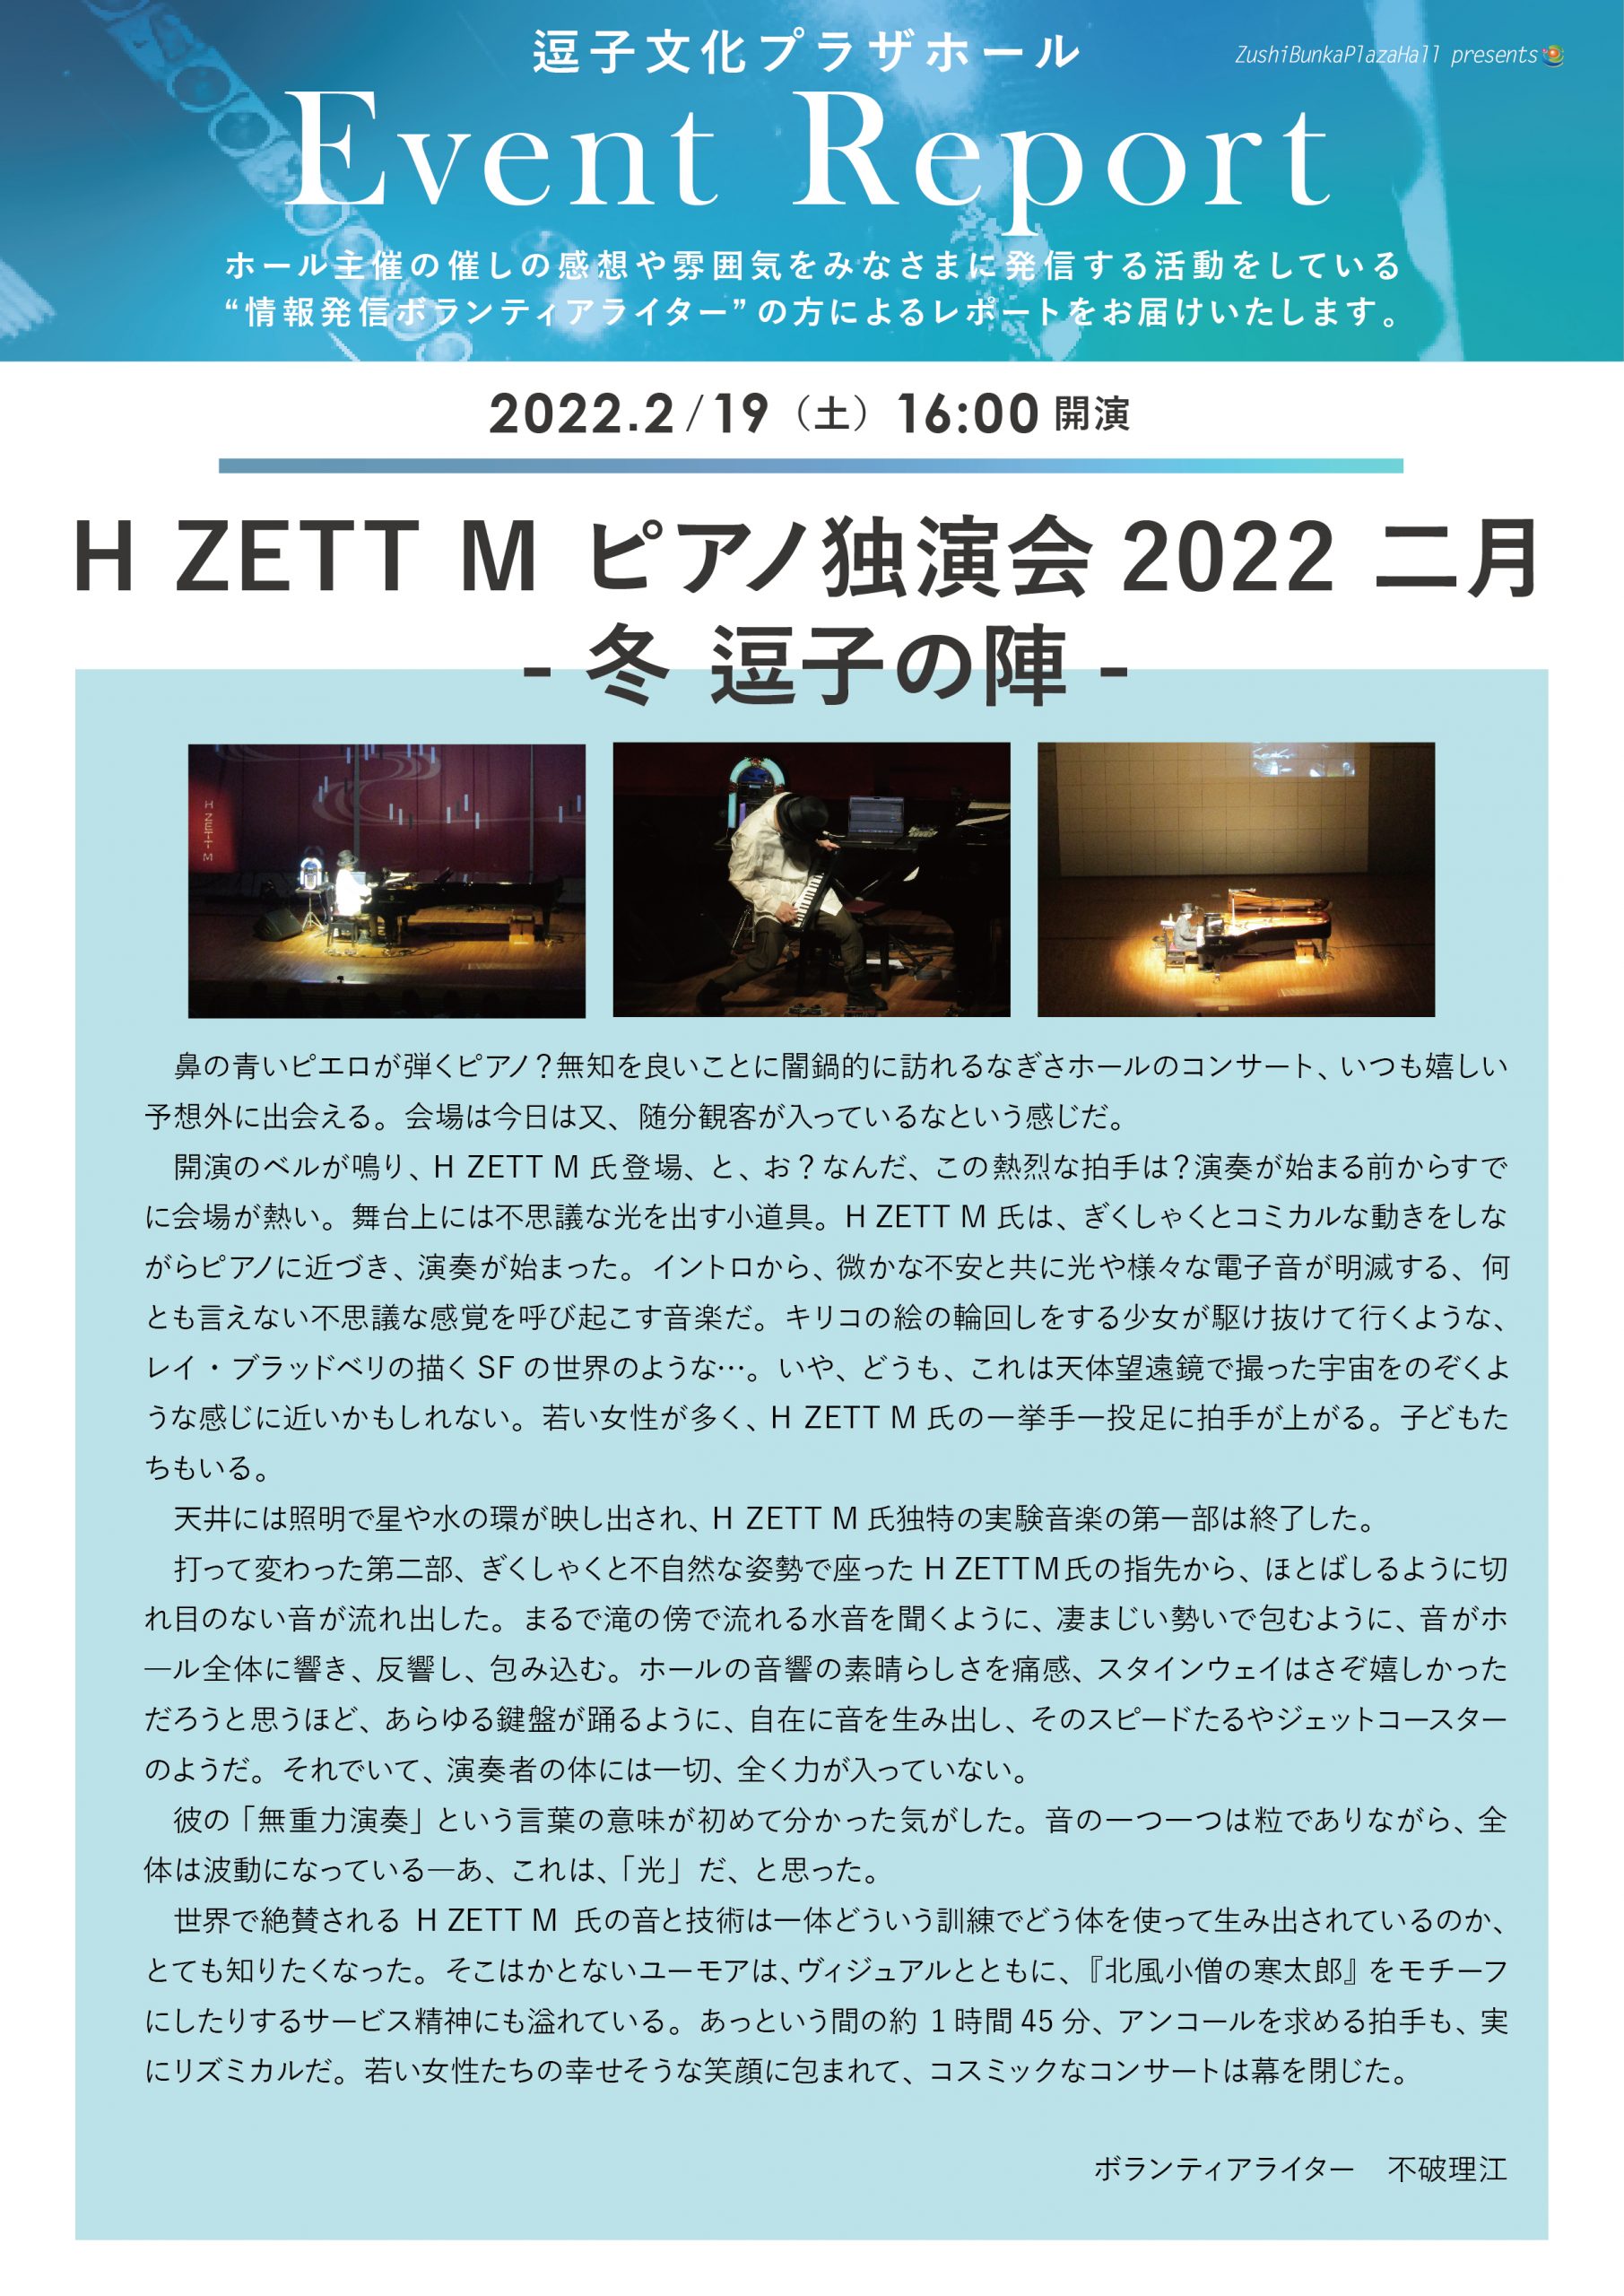 ★イベントレポート「H ZETT M ピアノ独演会2022 二月 -冬 逗子の陣-」2022年2月19日（土）開催